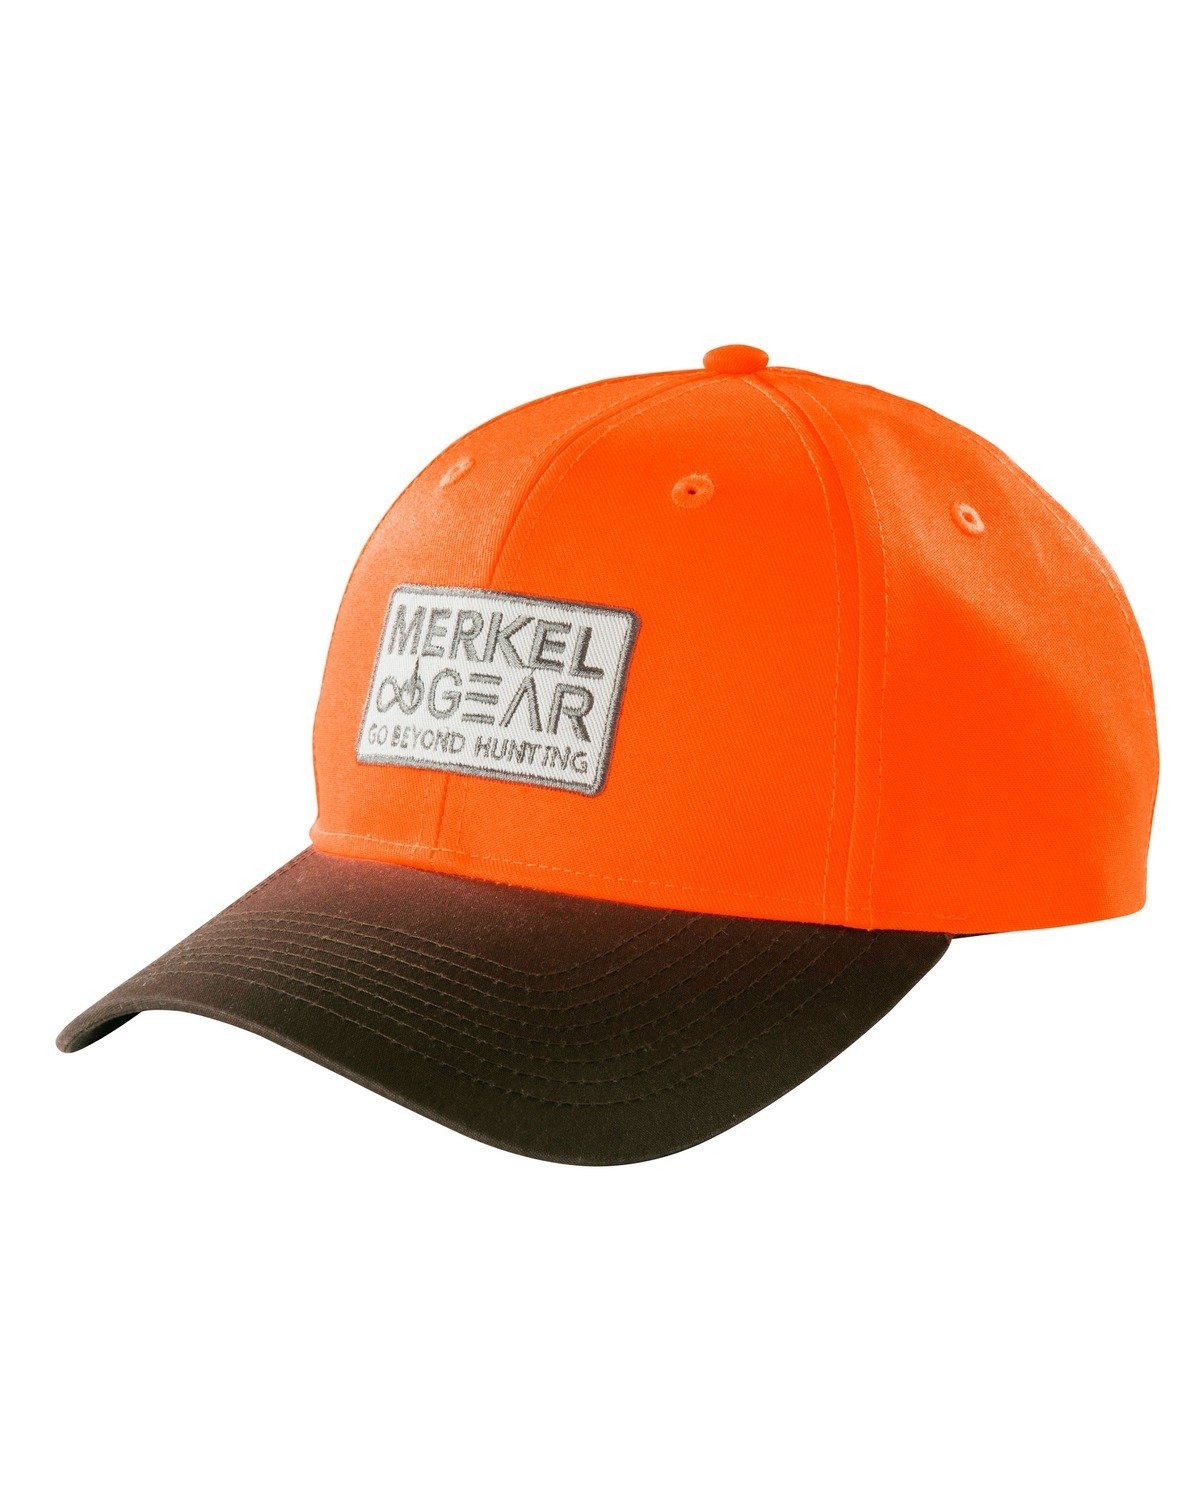 Merkel Gear Baseball Cap Blaze Cap | Baseball Caps